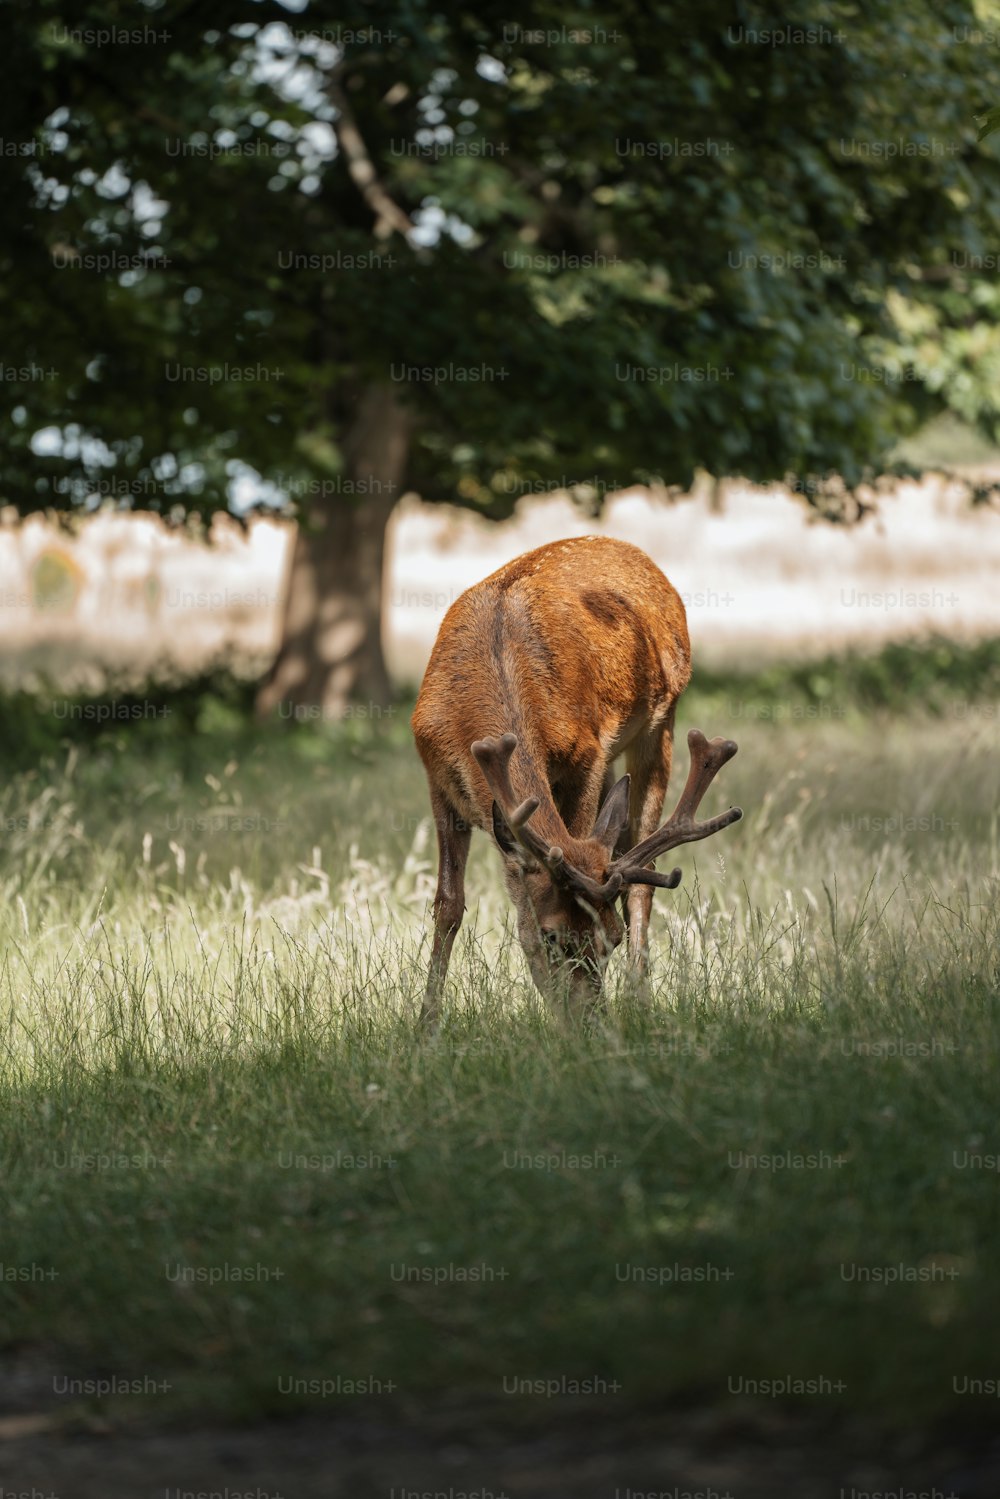 Un ciervo comiendo hierba en un campo junto a un árbol